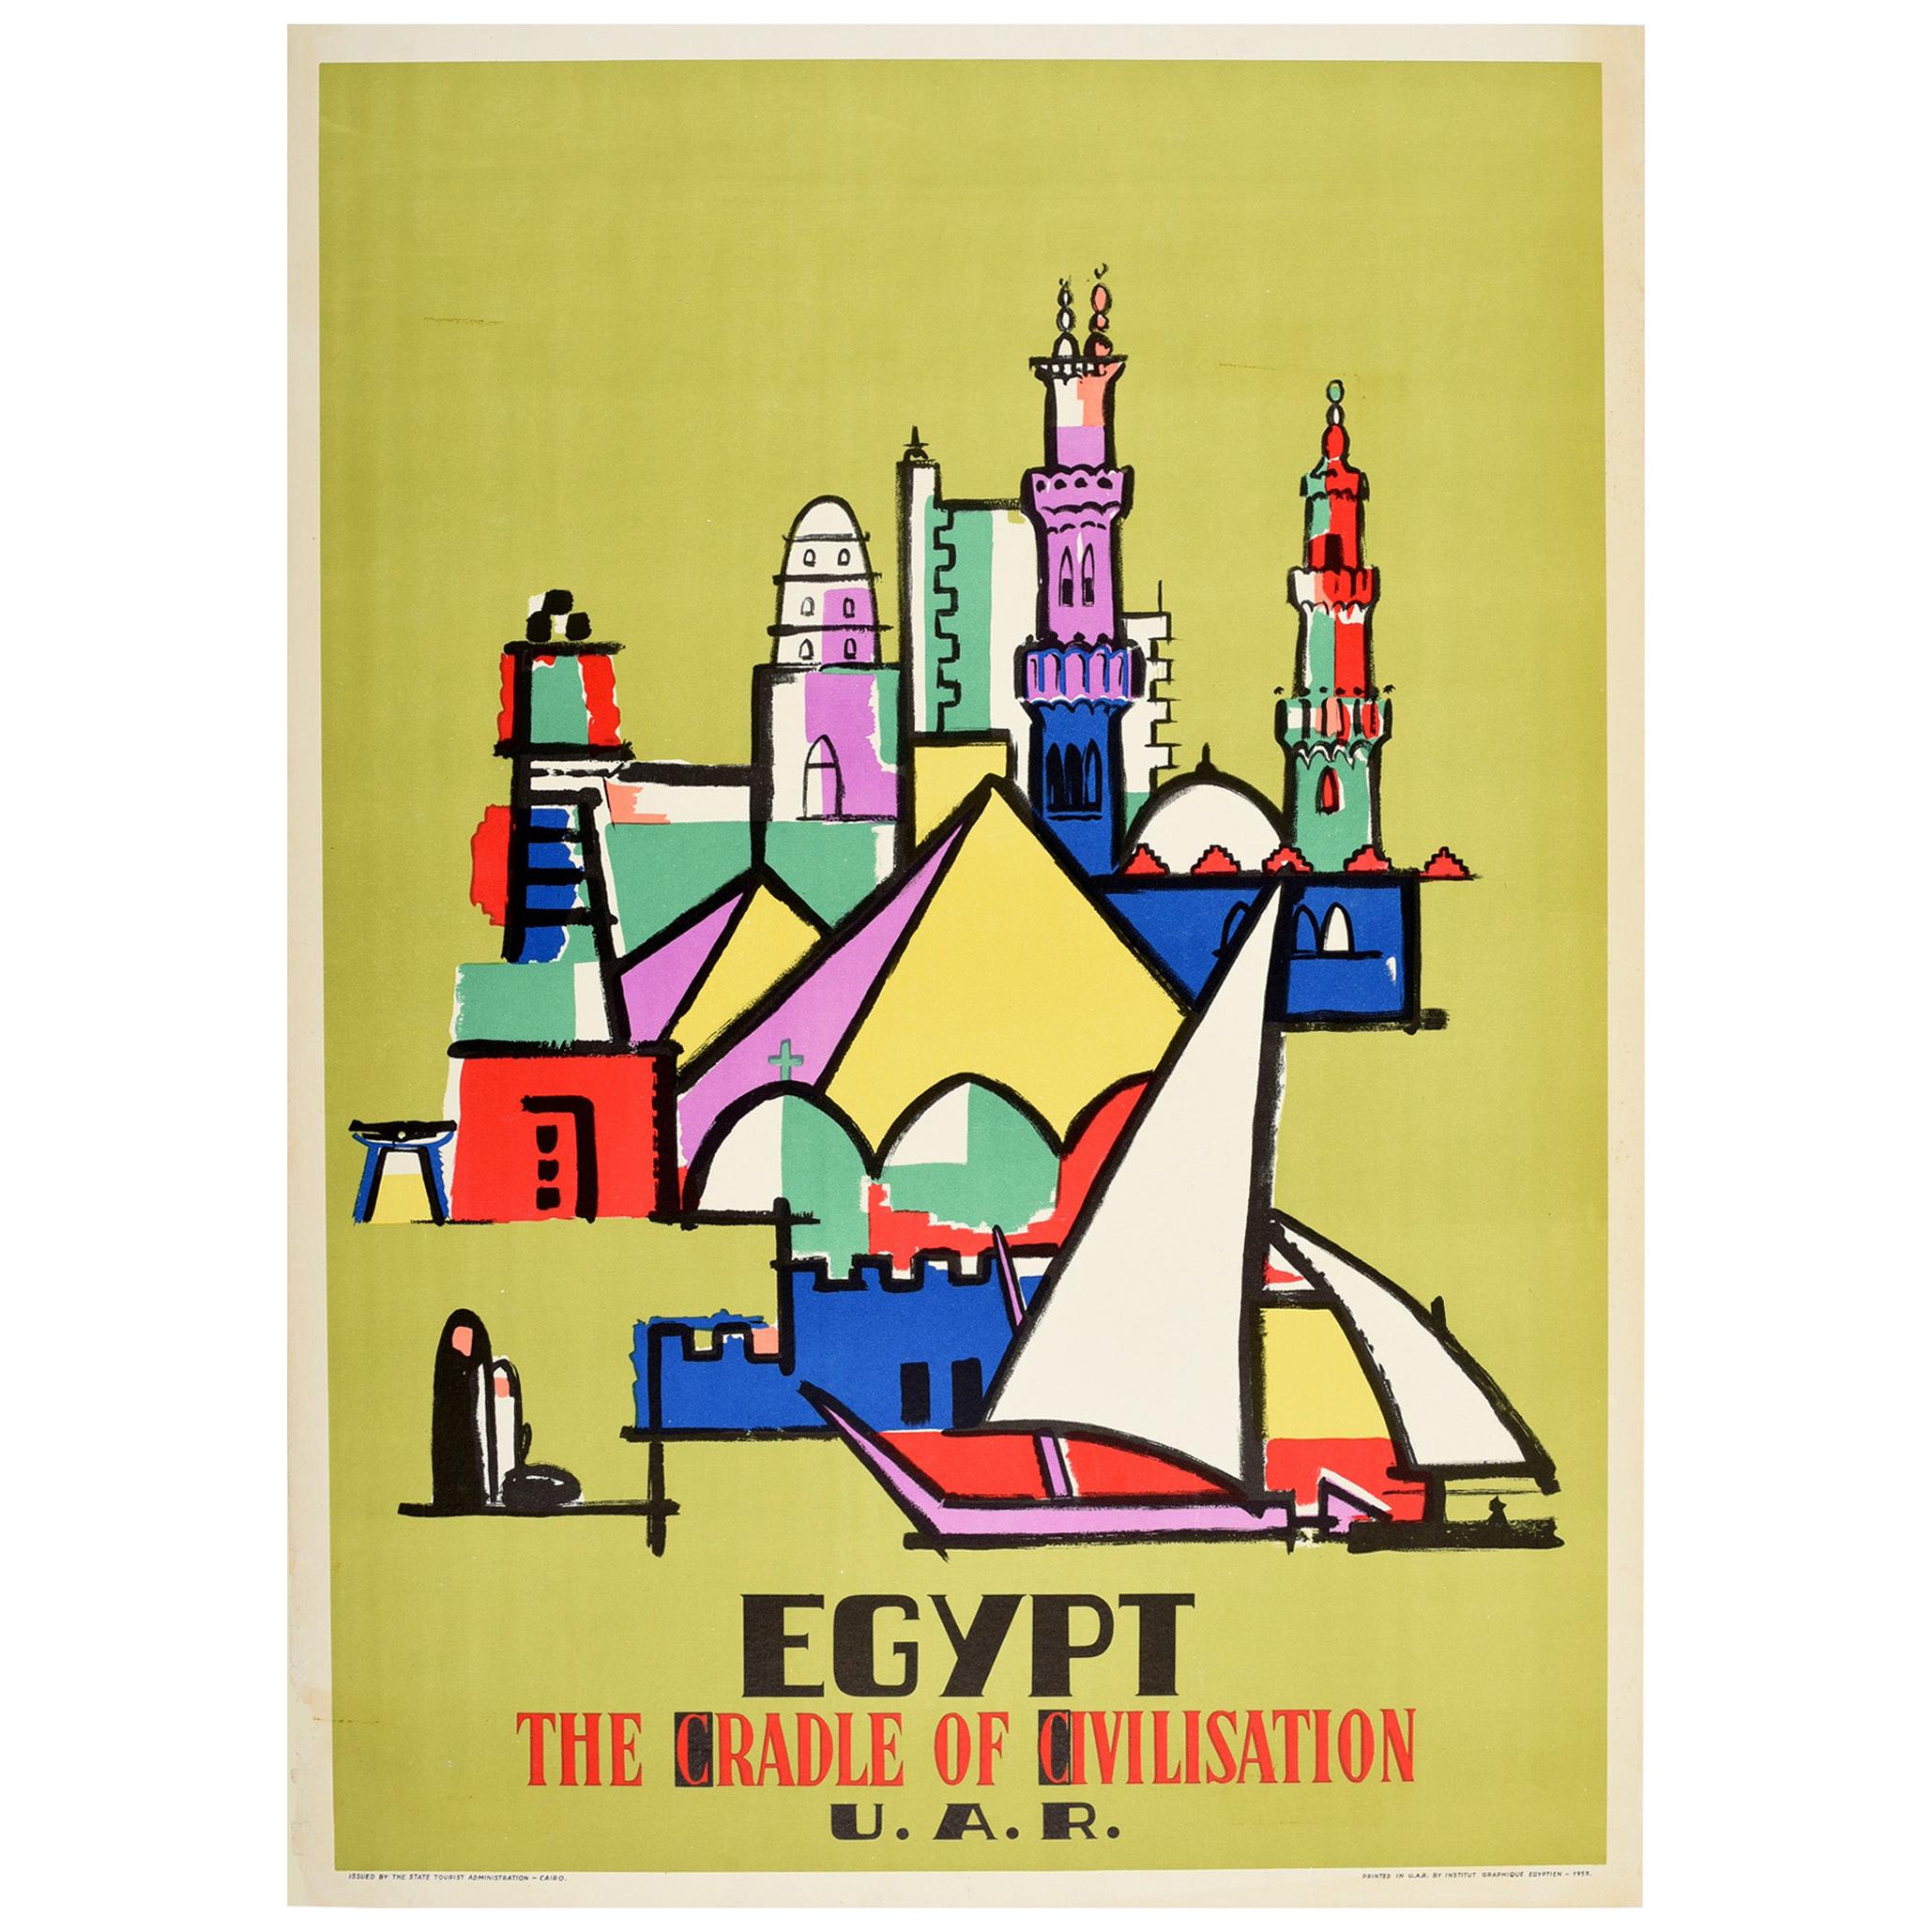 Original Vintage Travel Poster Egypt The Cradle Of Civilisation Modernist Design For Sale